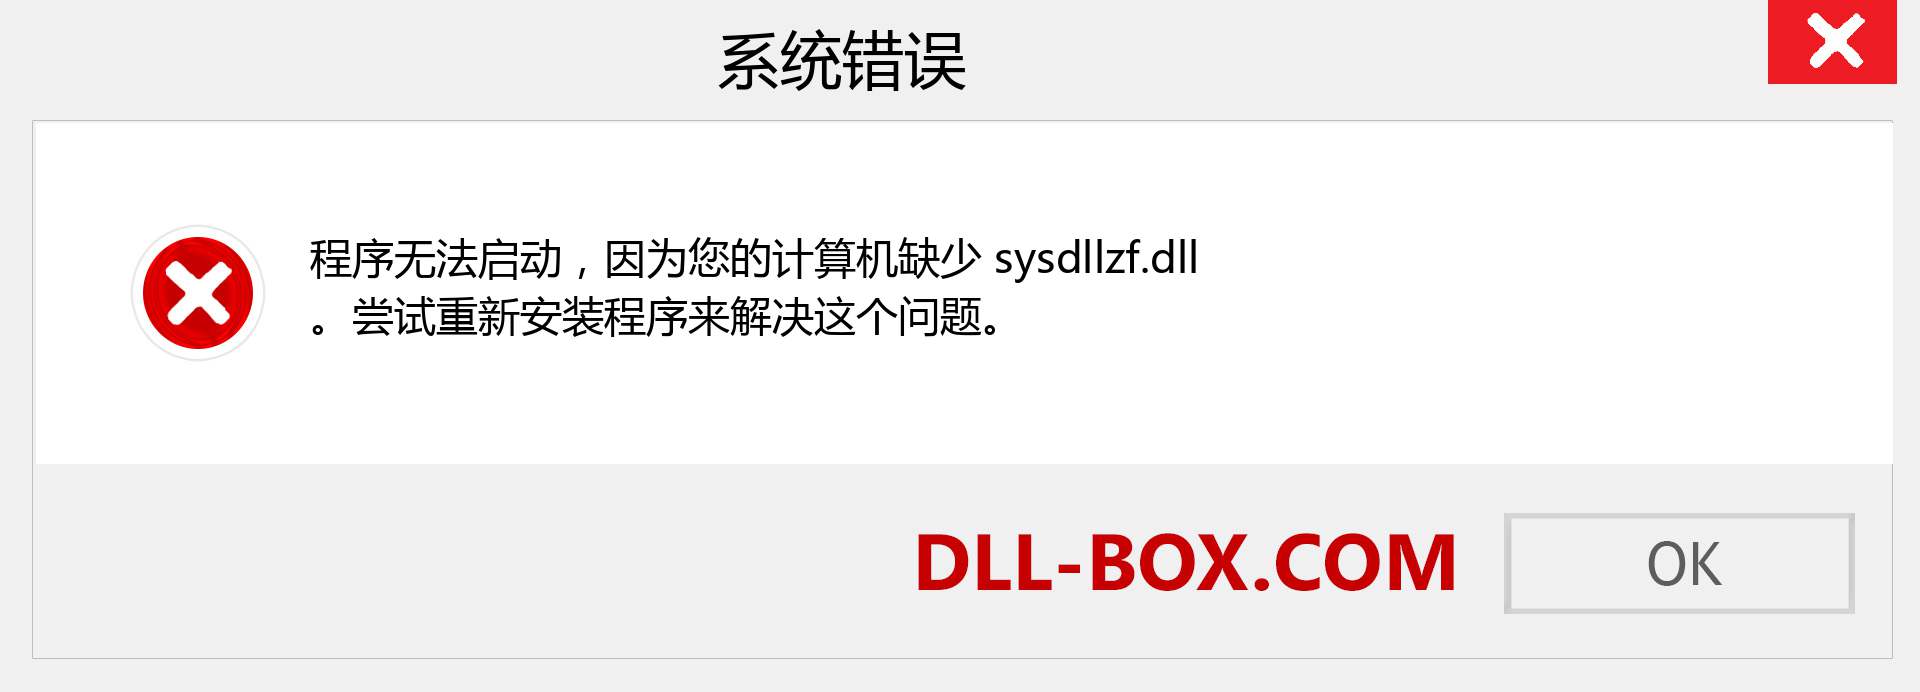 sysdllzf.dll 文件丢失？。 适用于 Windows 7、8、10 的下载 - 修复 Windows、照片、图像上的 sysdllzf dll 丢失错误